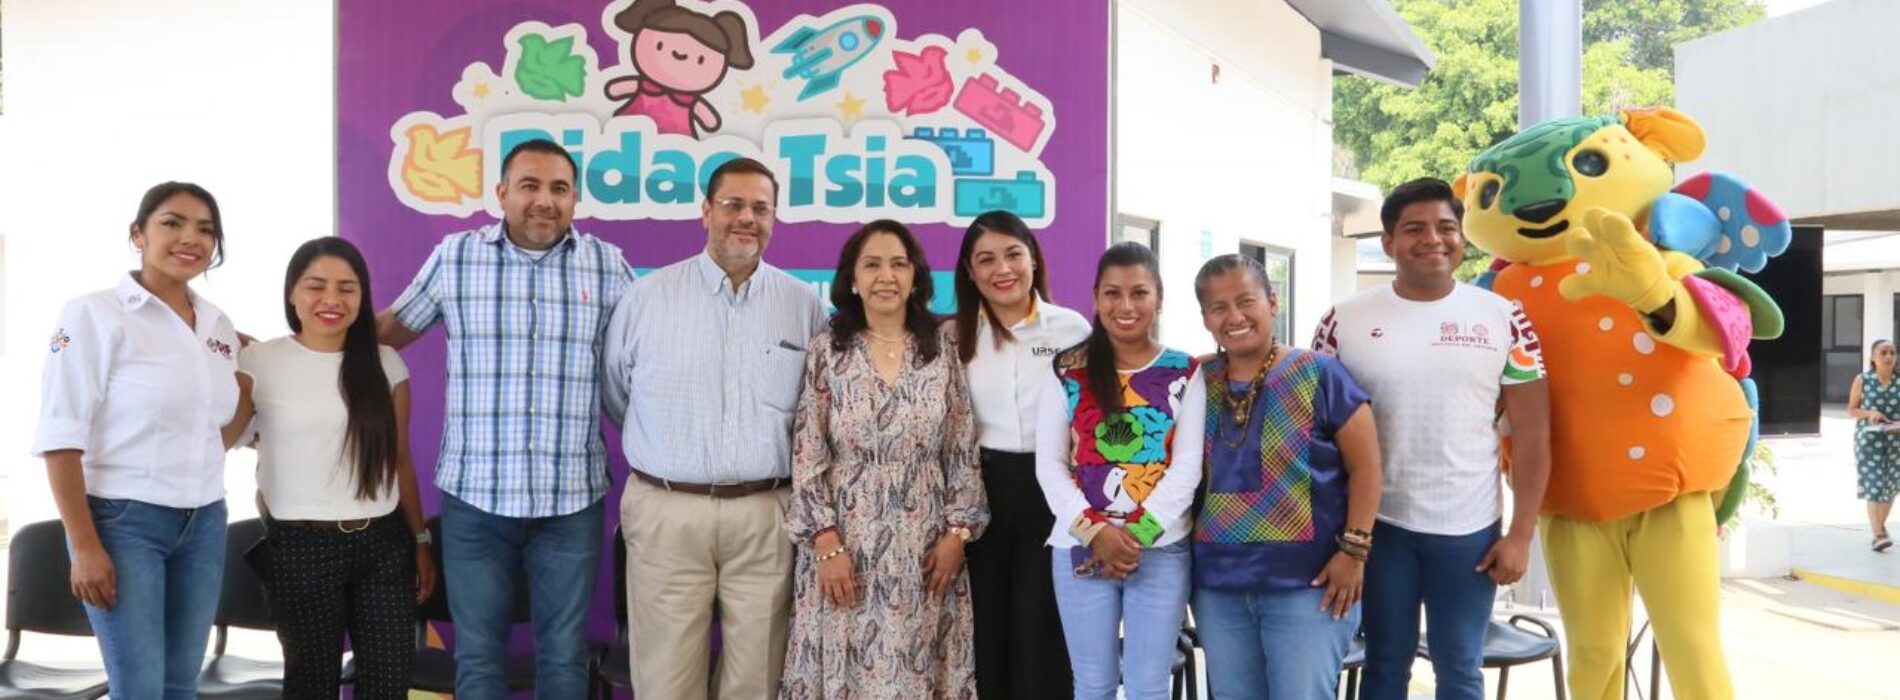 Comienza DIF Oaxaca con entrega de los 63 mil juguetes recolectados en la campaña “Bidao Tsia”